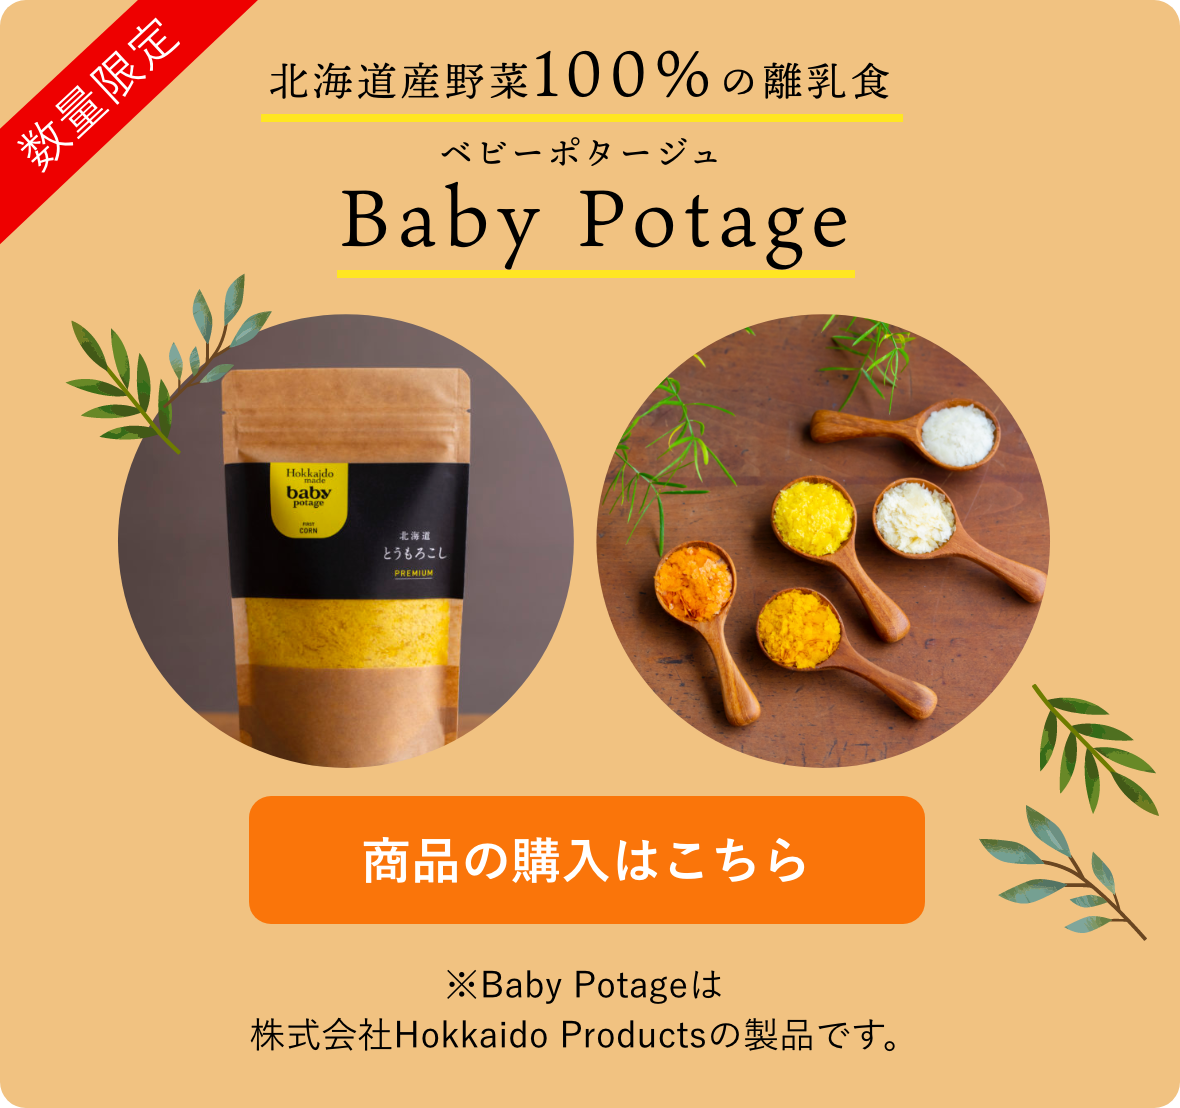 即納最大半額 Baby Potage 送料無料 ギフトボックス入り 瓶 50g×3個